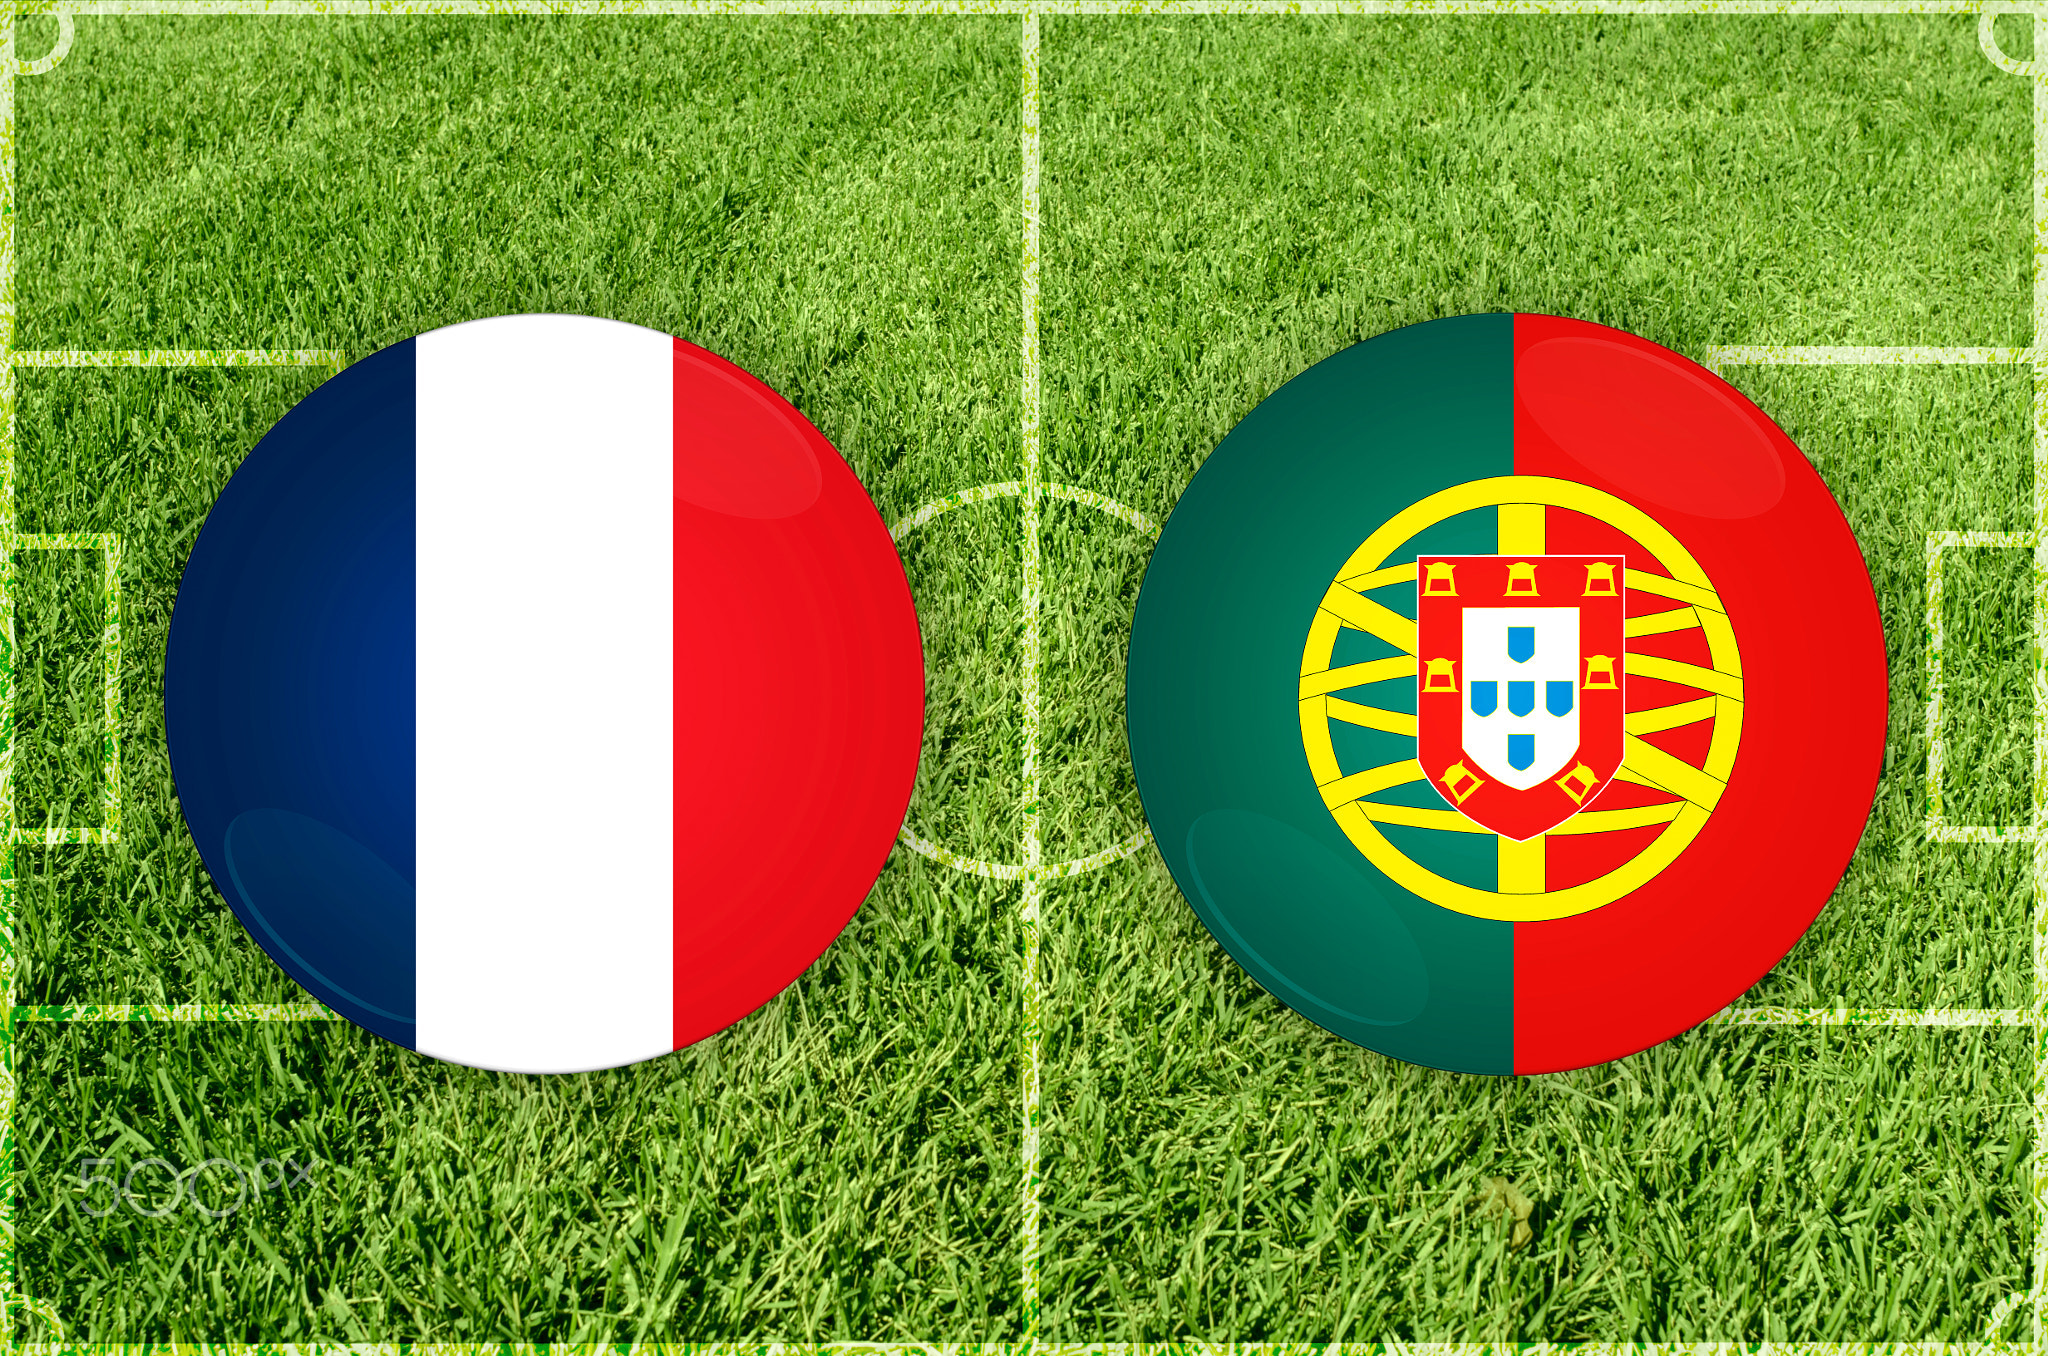 France vs Portugal